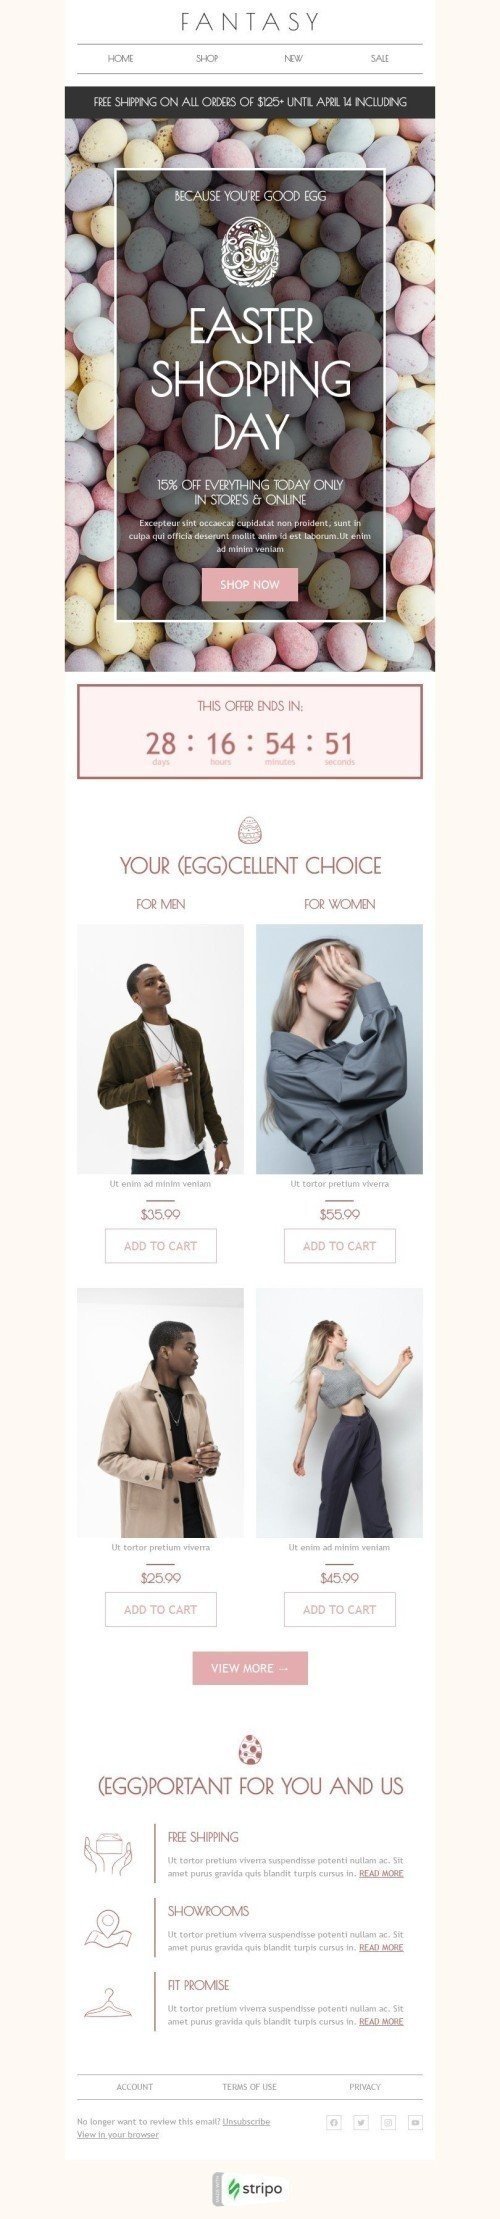 Plantilla de correo electrónico «Compras de pascua» de Semana Santa para la industria de Moda Vista de móvil